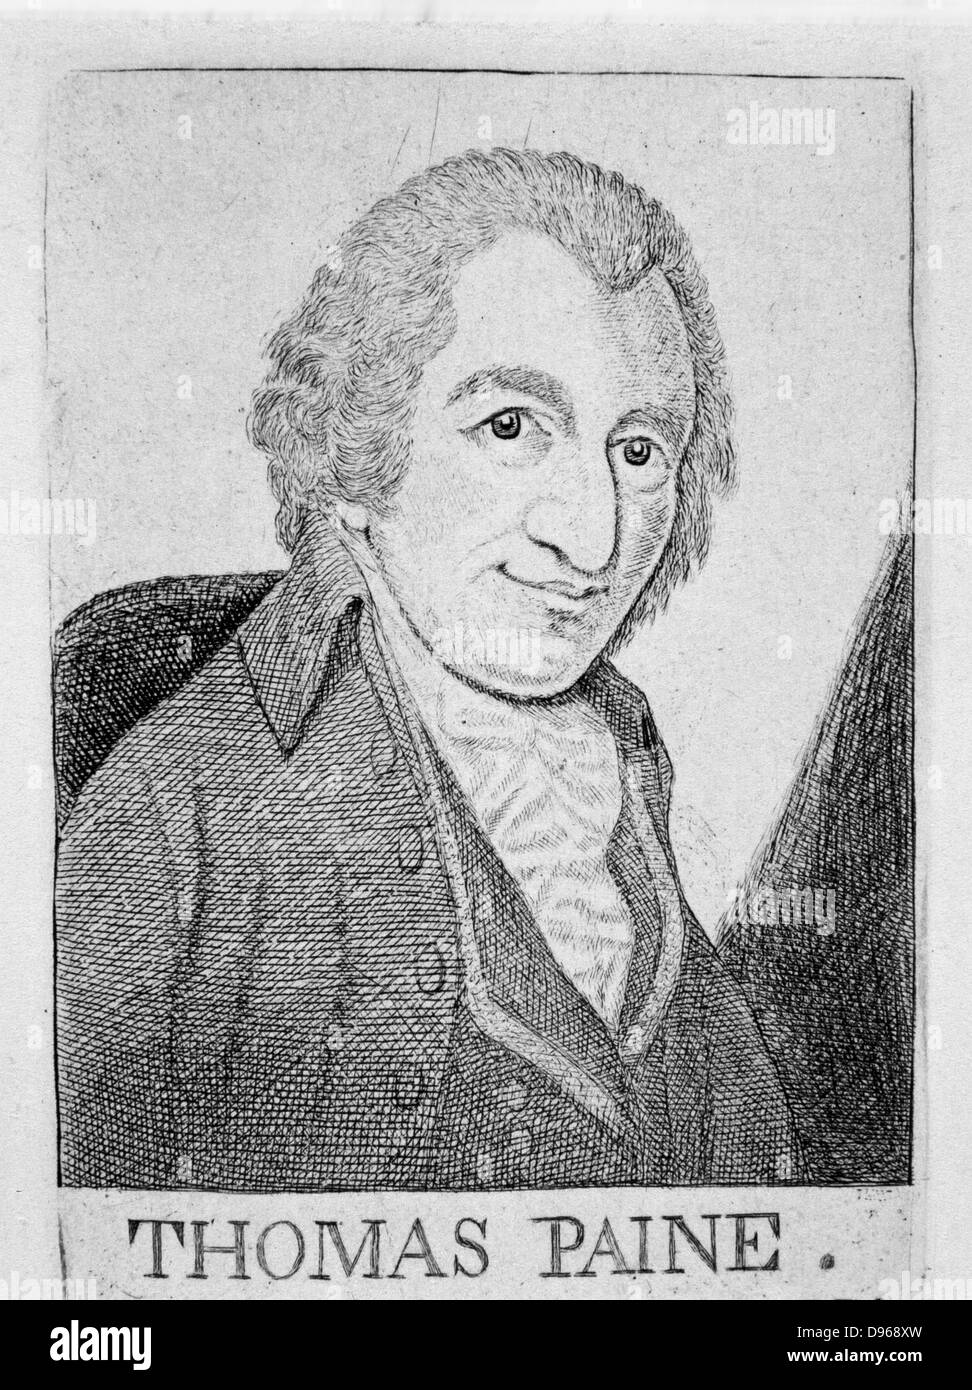 Thomas Paine (1737-1809) anglais-américain révolutionnaire, écrivain, philosophe. À partir de John Kay 'portraits originaux', Édimbourg c1790. Banque D'Images